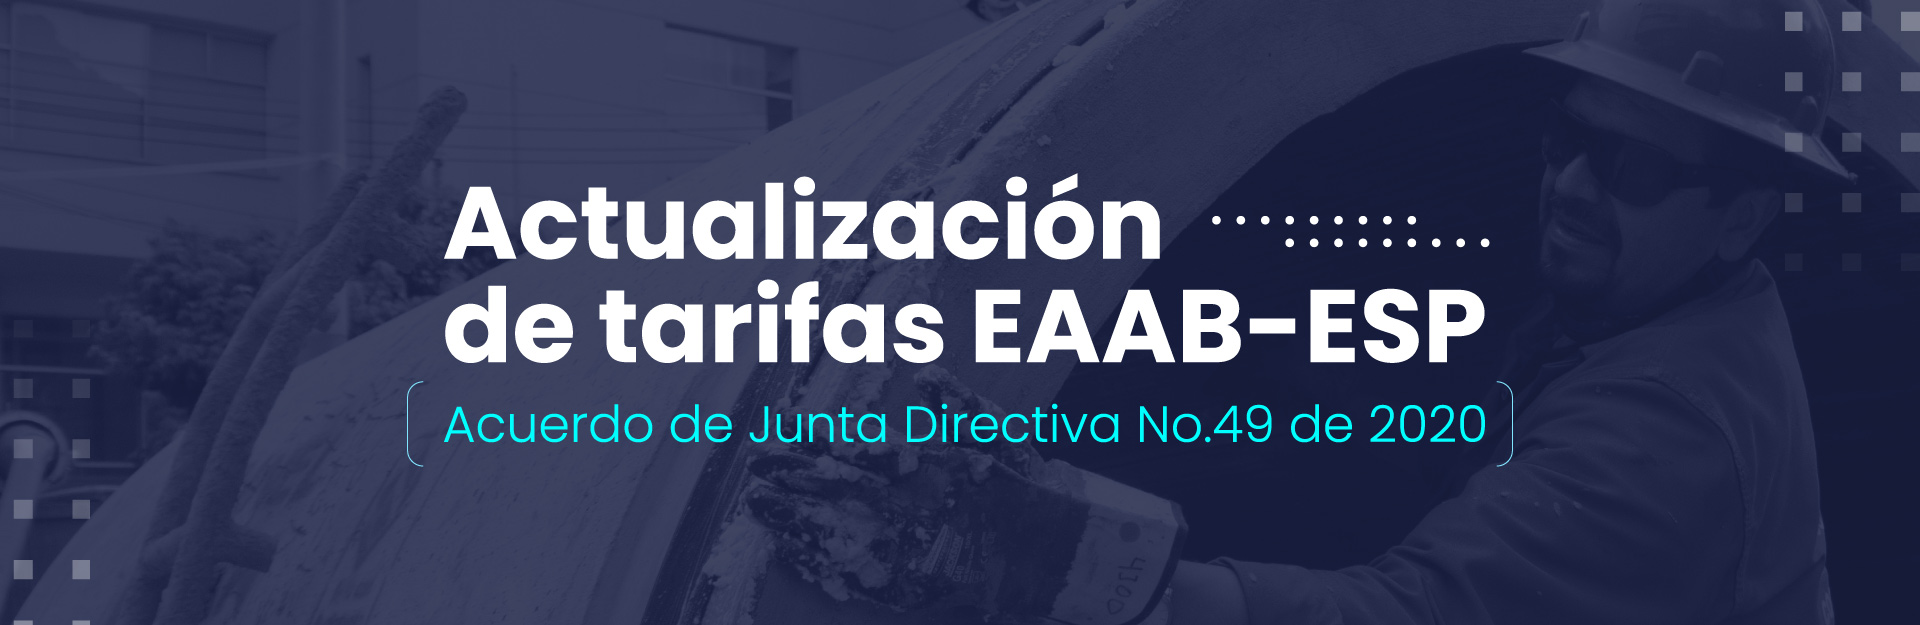 Actualización de tarifas EAAB - ESP Acuerdo de Junta Directiva No. 49 de 2020